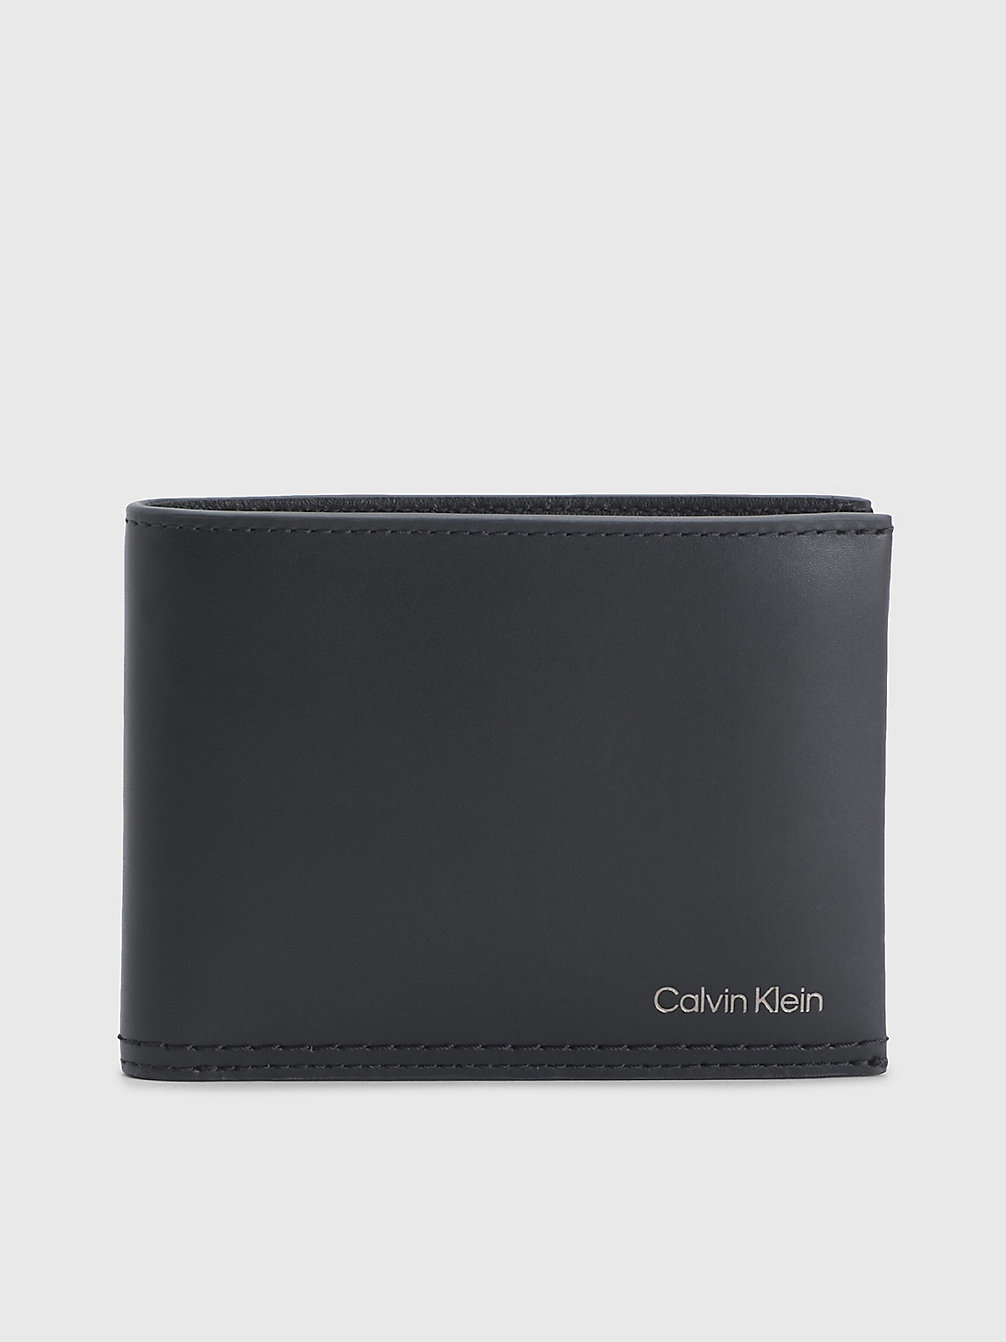 CK BLACK Leather Rfid Billfold Wallet undefined men Calvin Klein